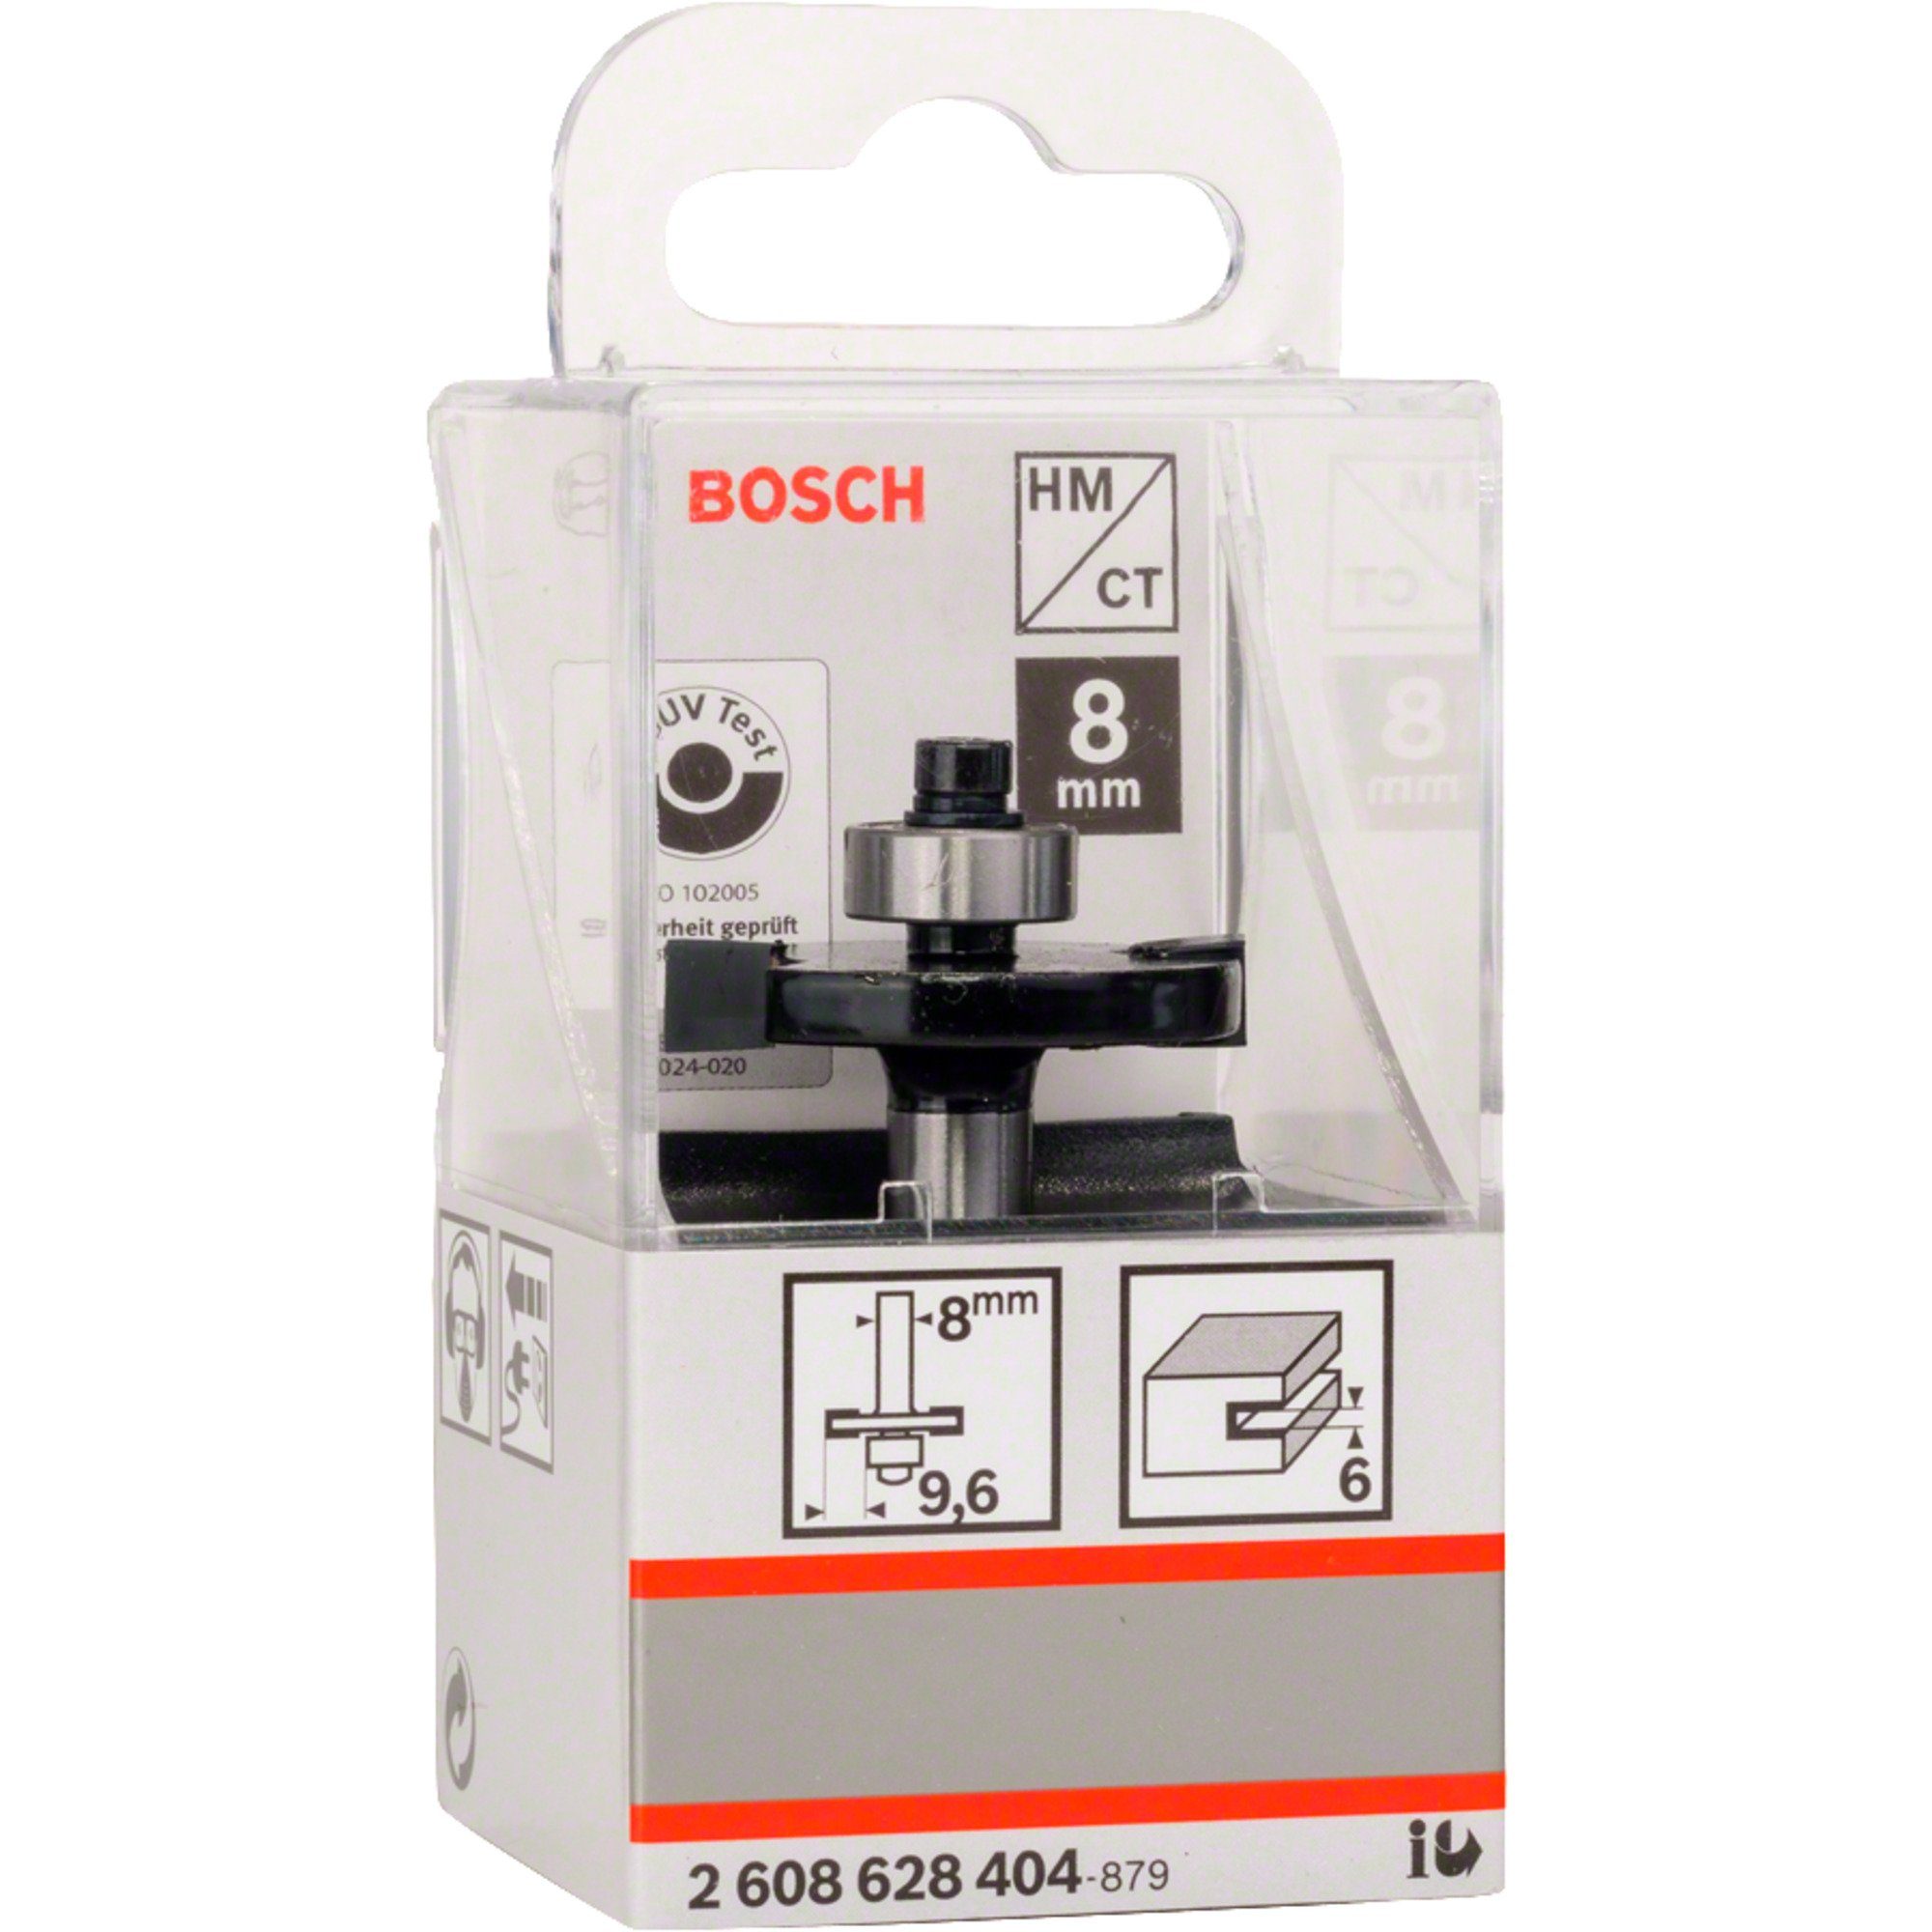 BOSCH Fräse Bosch for Standard Scheiben-Nutfräser Professional